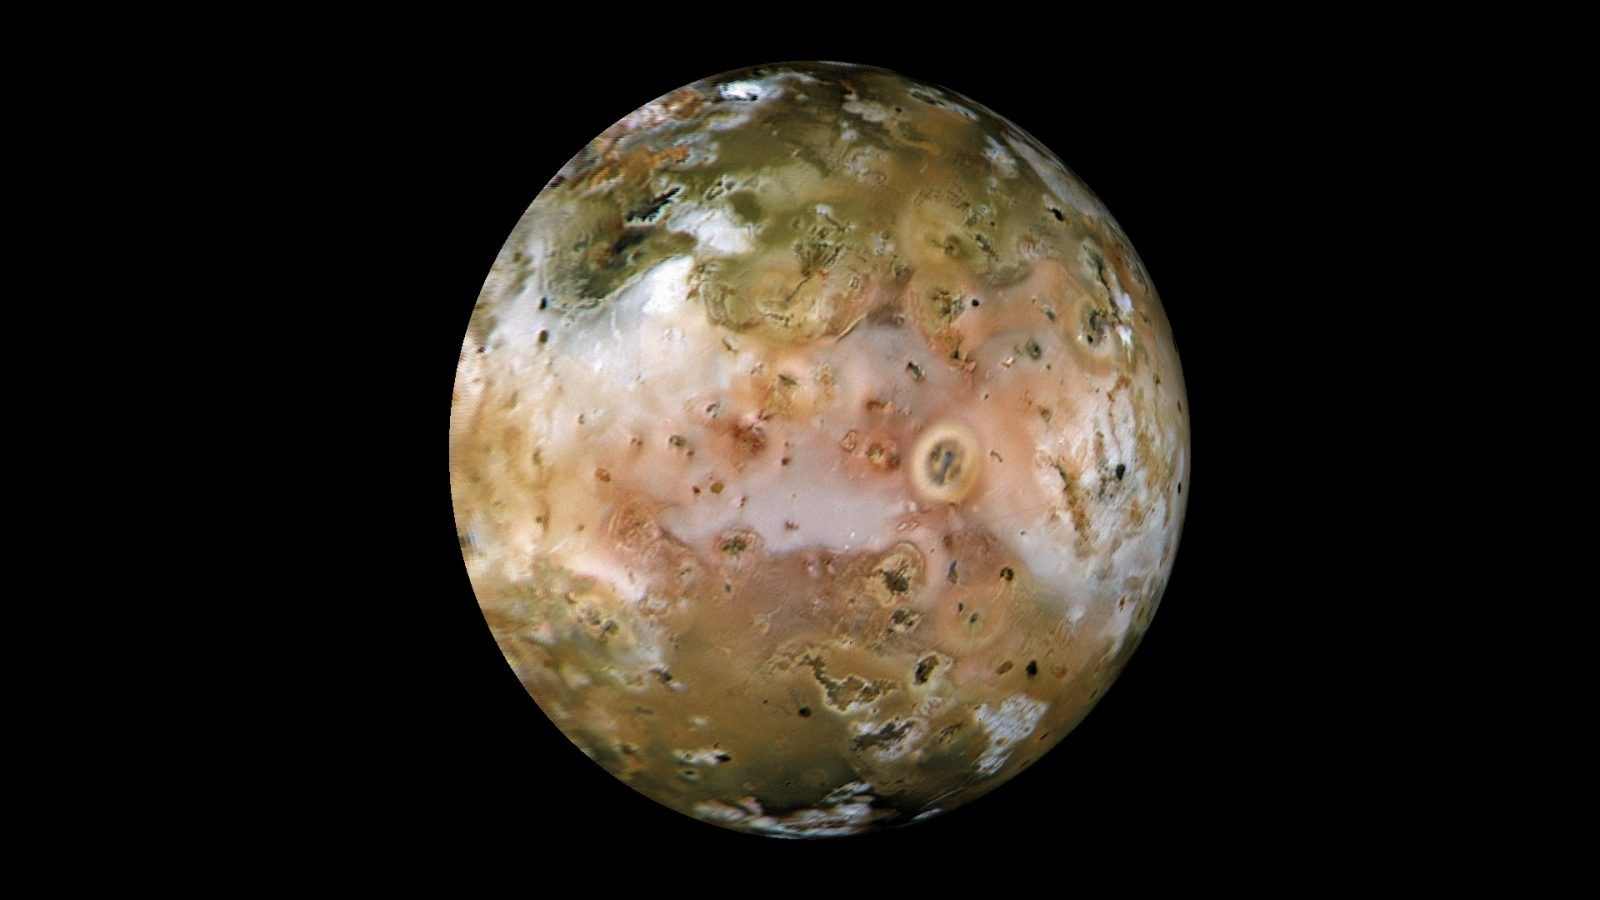 Spektakularne zdjęcia Io! Sonda Juno przeleciała tuż nad powierzchnią tego wulkanicznego globu